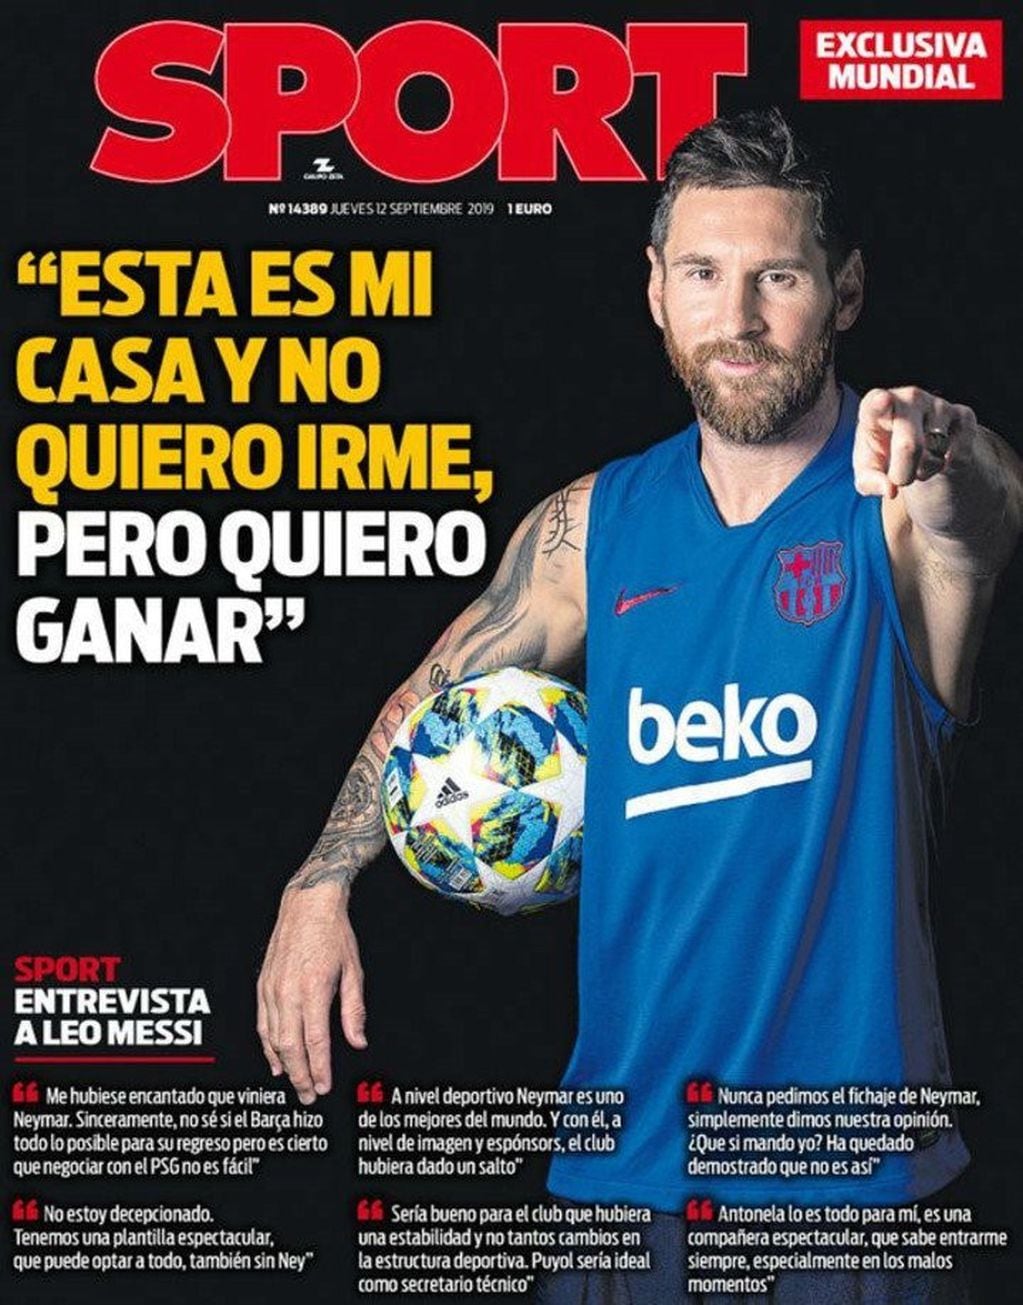 La tapa del diario Sport del jueves 12 de septiembre de 2019 con la entrevista exclusiva a Lionel Messi. (Diario Sport)